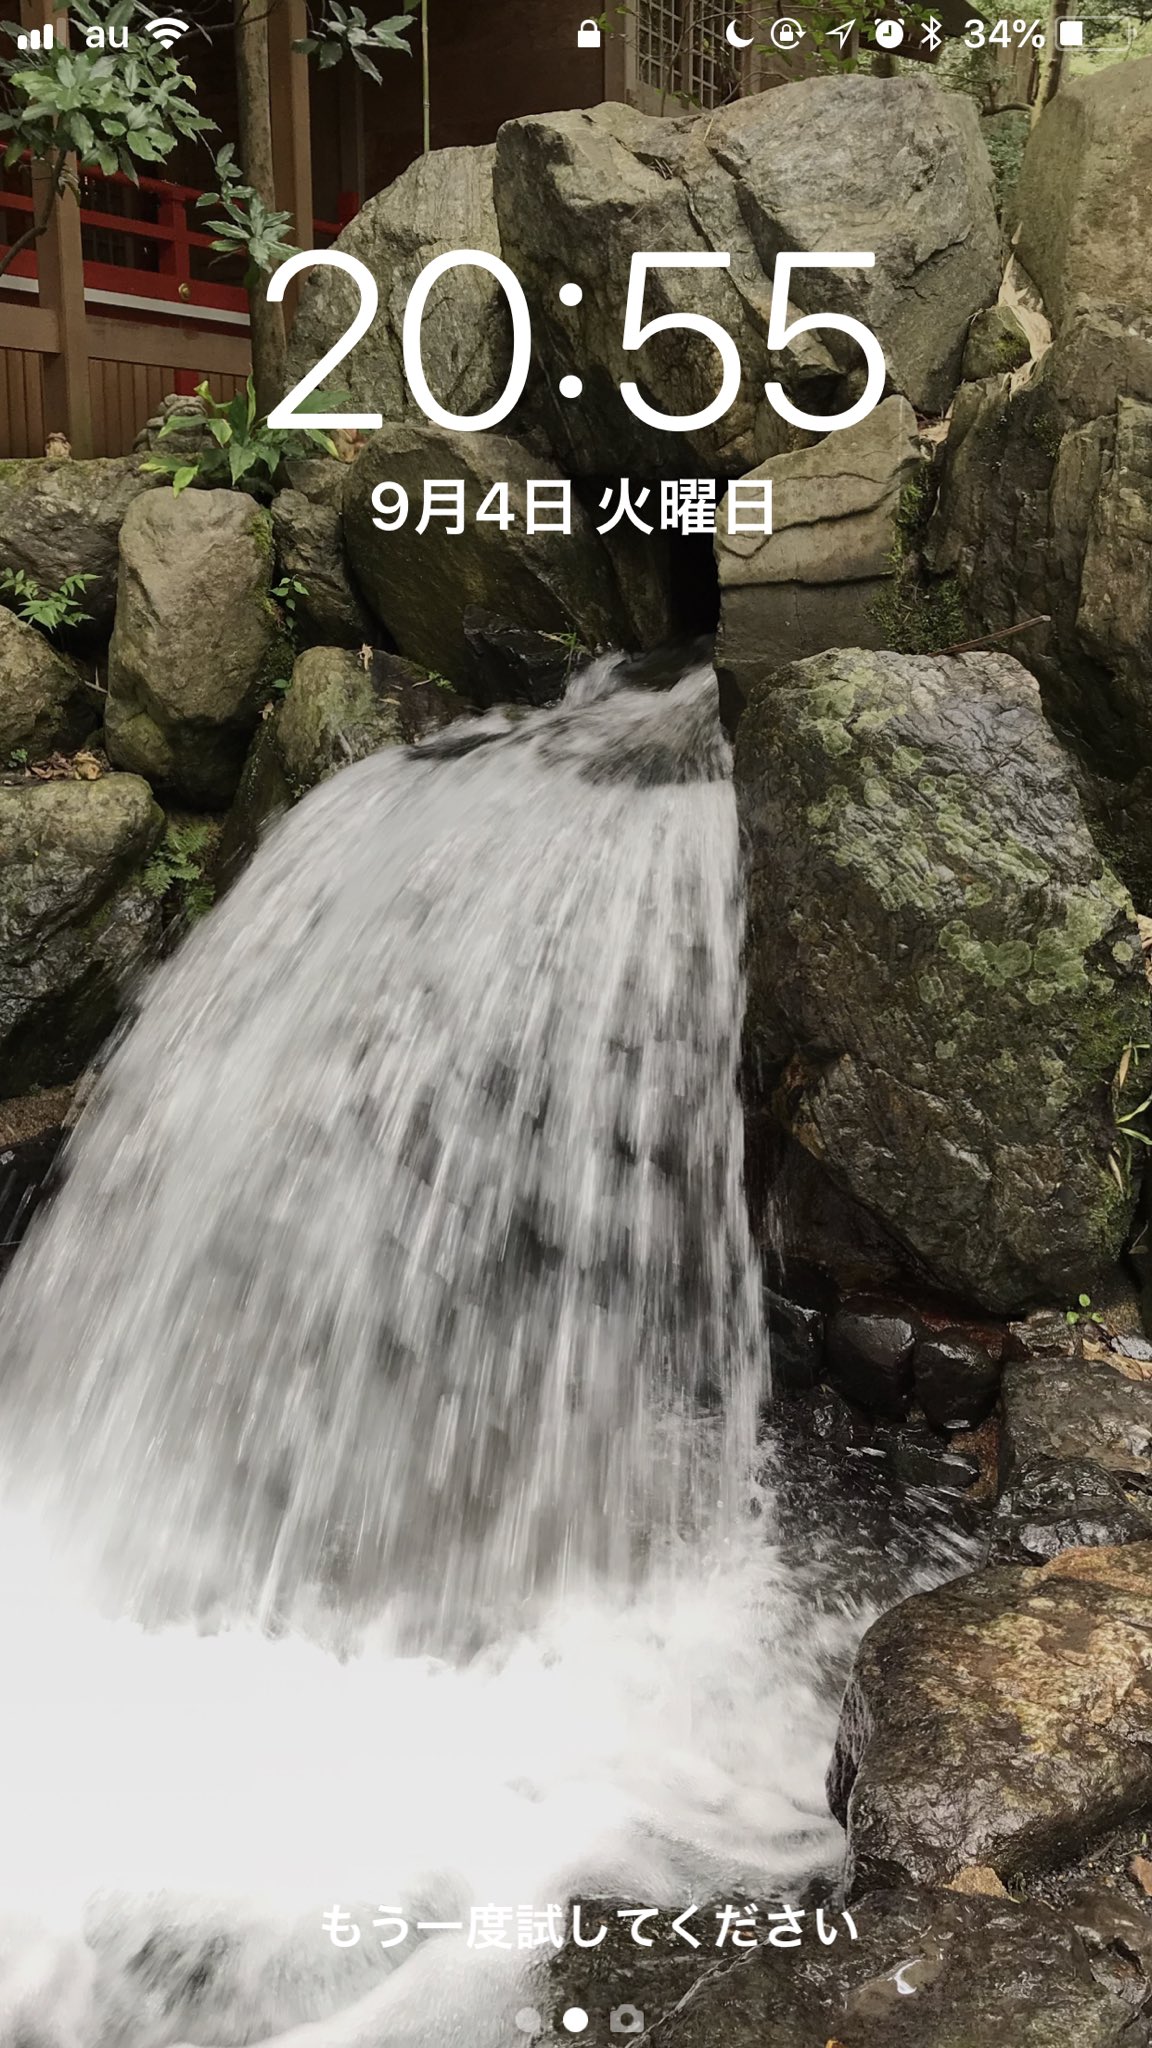 じゅんちゃん この間三重県の椿大神社に行ってきた そこにあるかなえ滝の写真を待ち受けにすると願いが叶うらしい チケットゲットを祈願中 パワースポット かなえ滝 T Co Bzunxx9b2w Twitter